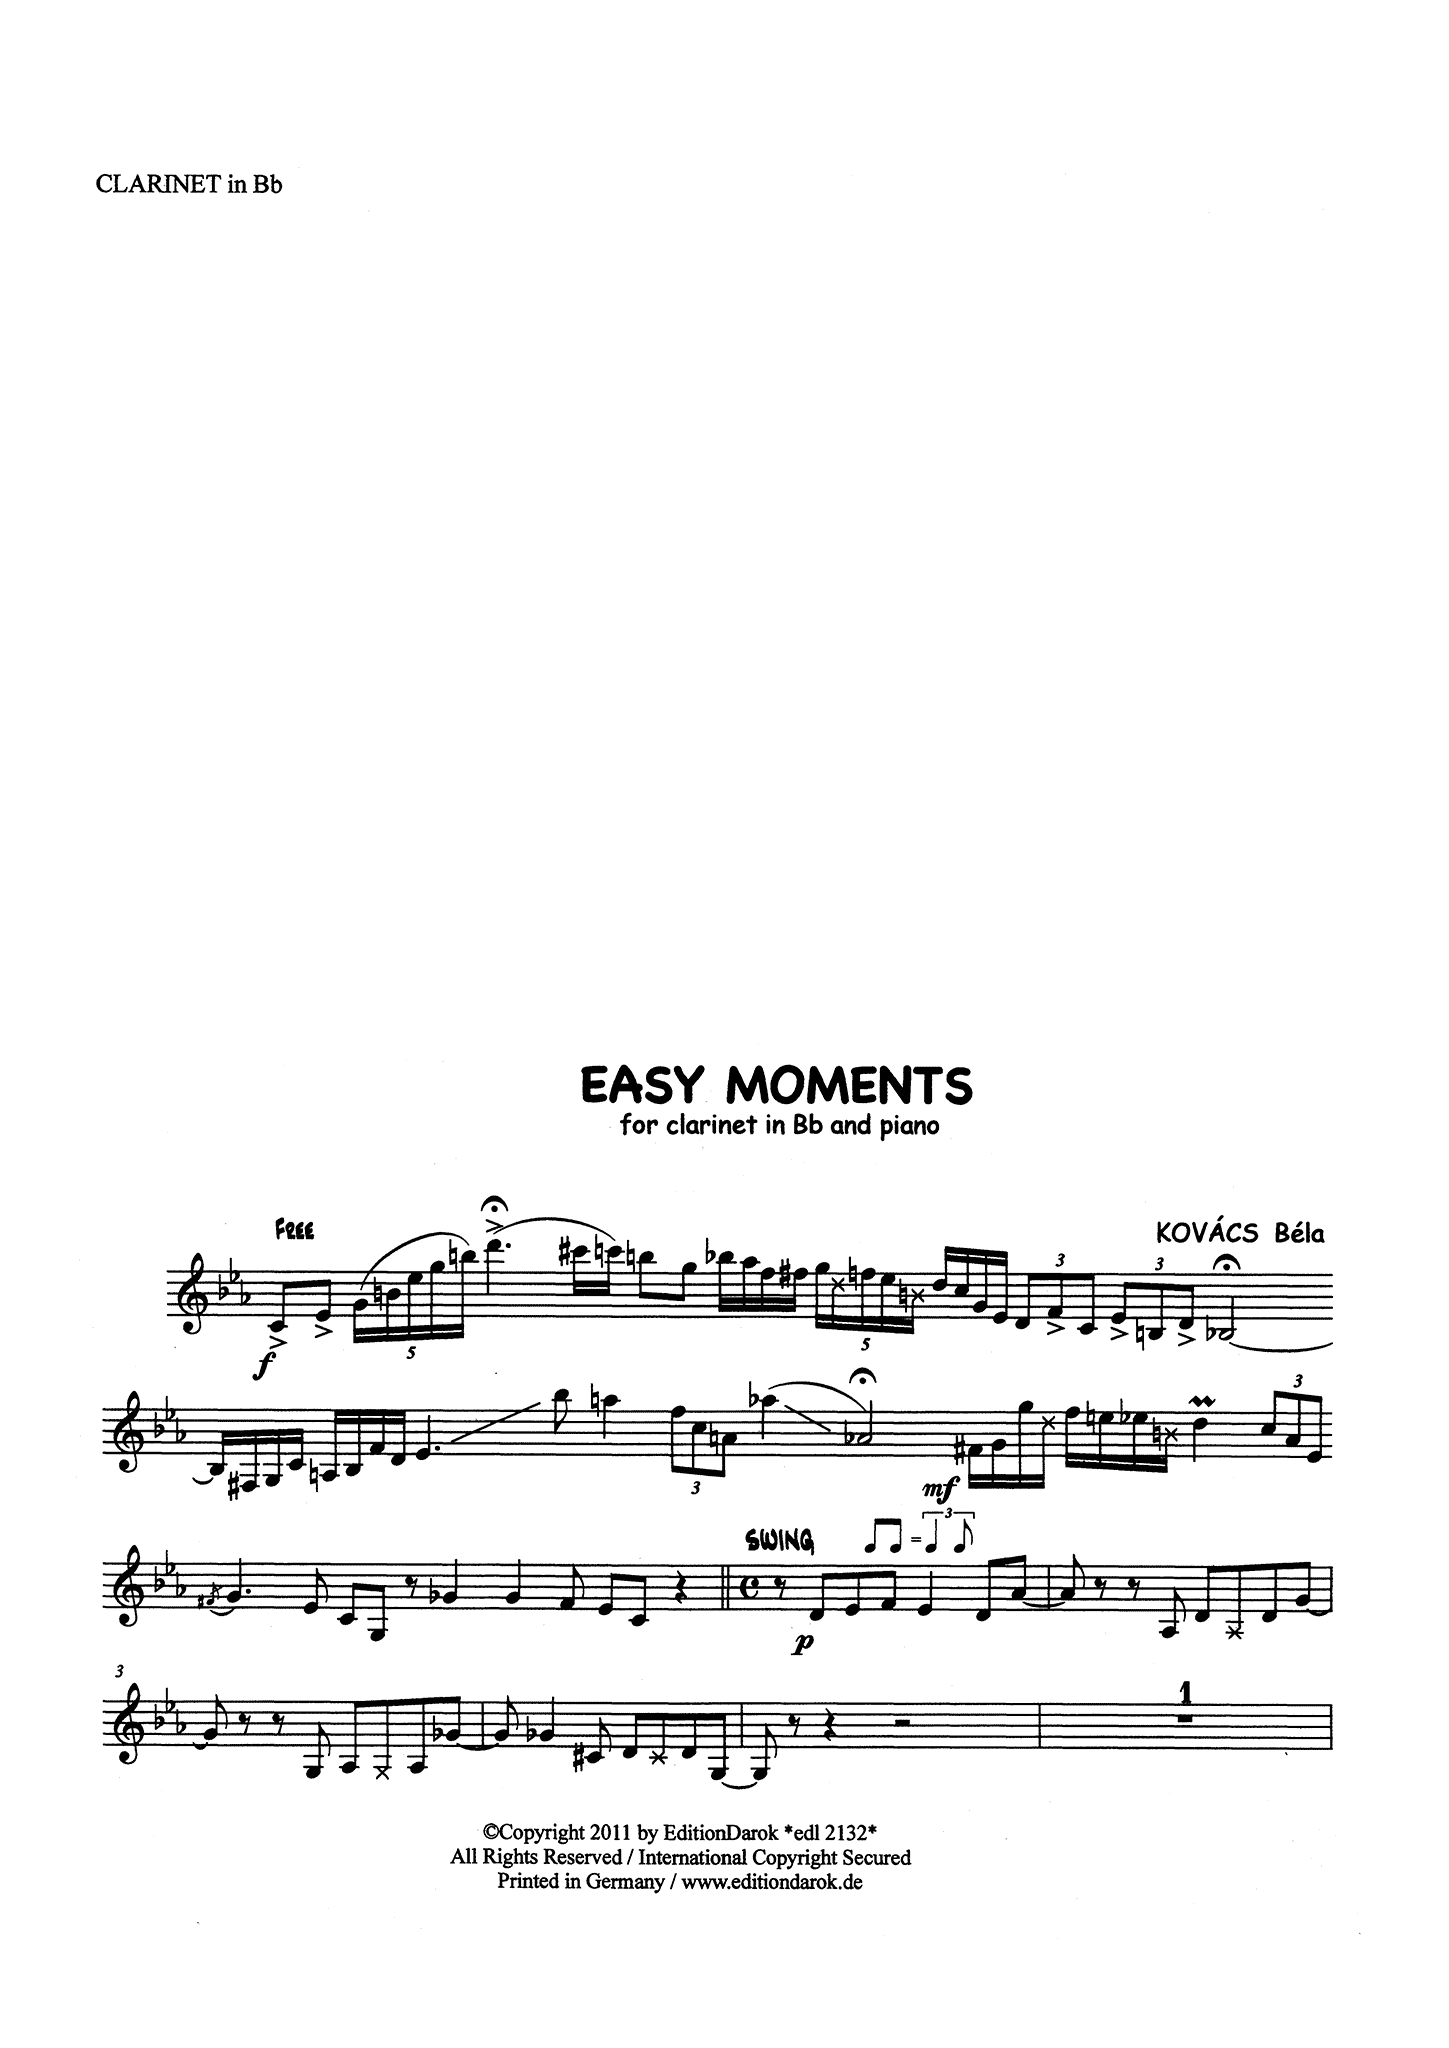 Kovács Easy Moments clarinet part